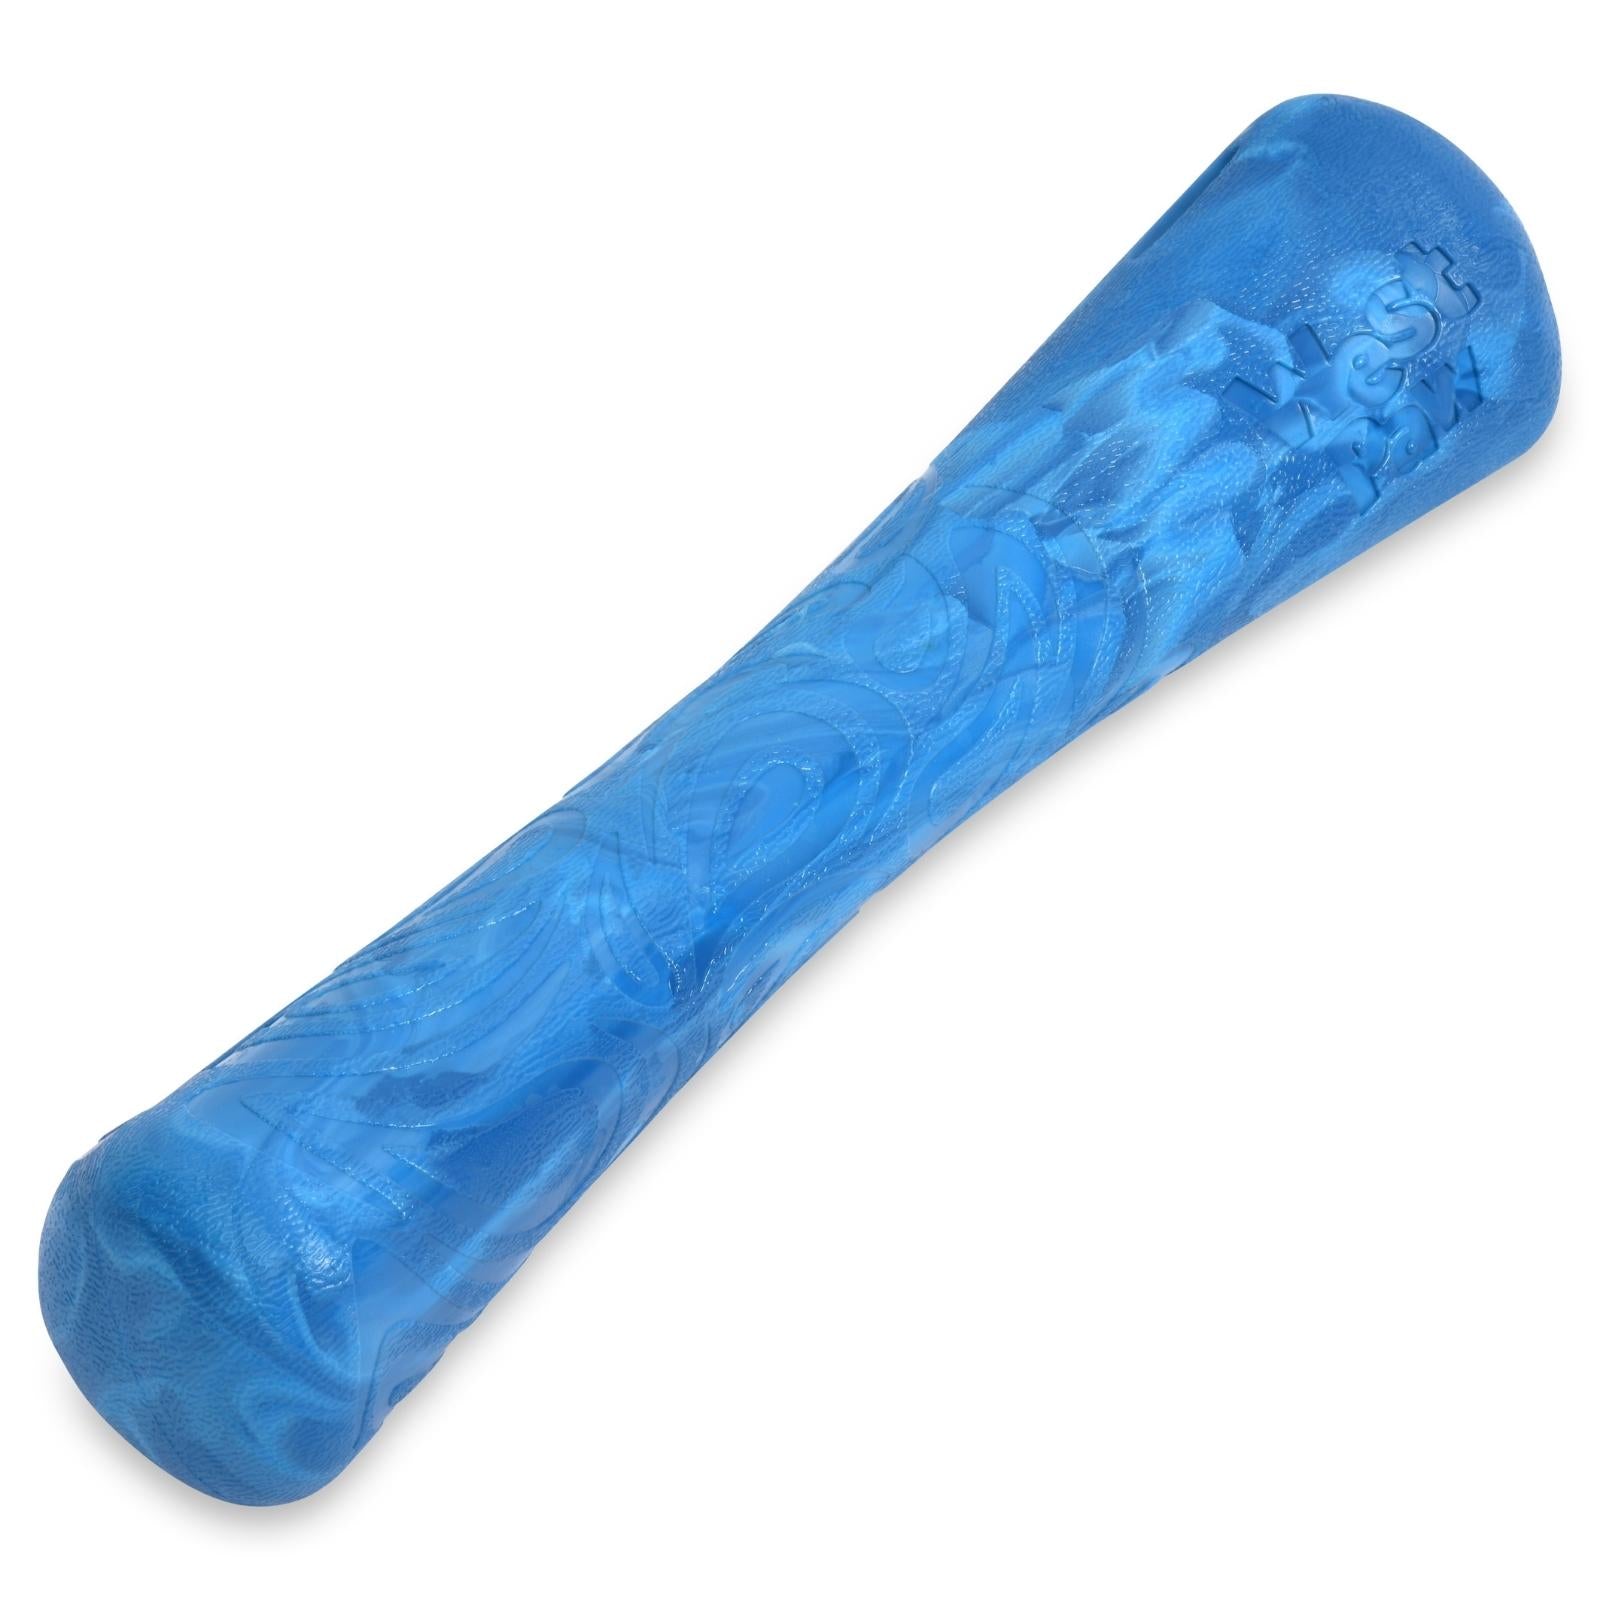 DRIFTY de West Paw® color Azul Surf - Hueso de Juguete para Perros